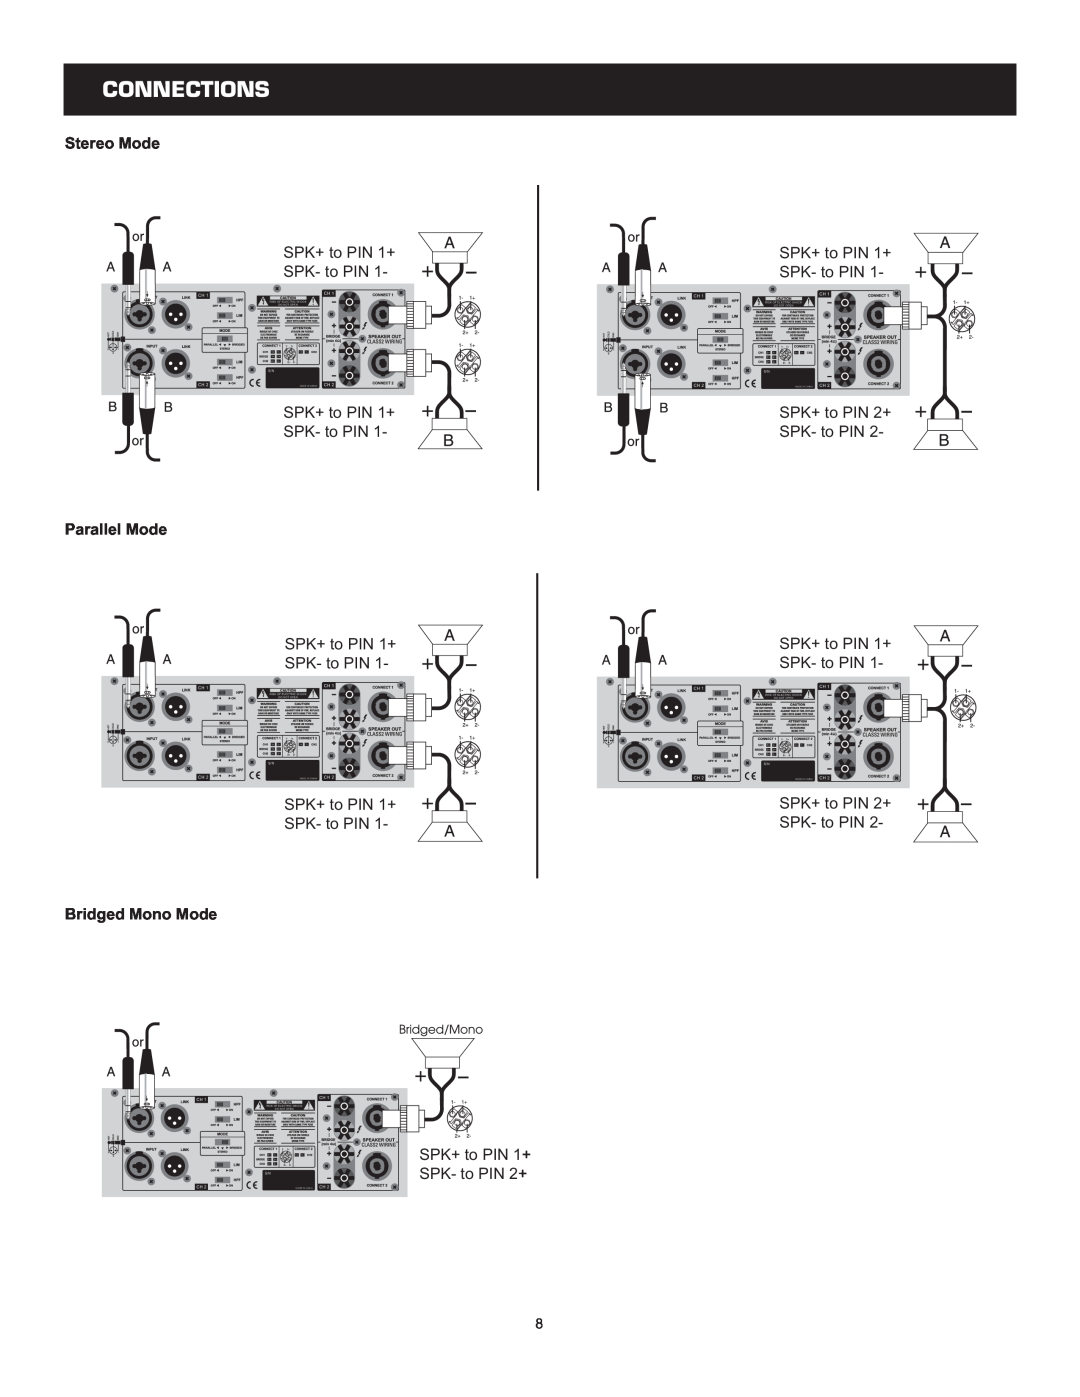 Cerwin-Vega CV-1800, CV-2800, CV-900 user manual Connections, Stereo Mode, Parallel Mode, Bridged Mono Mode 